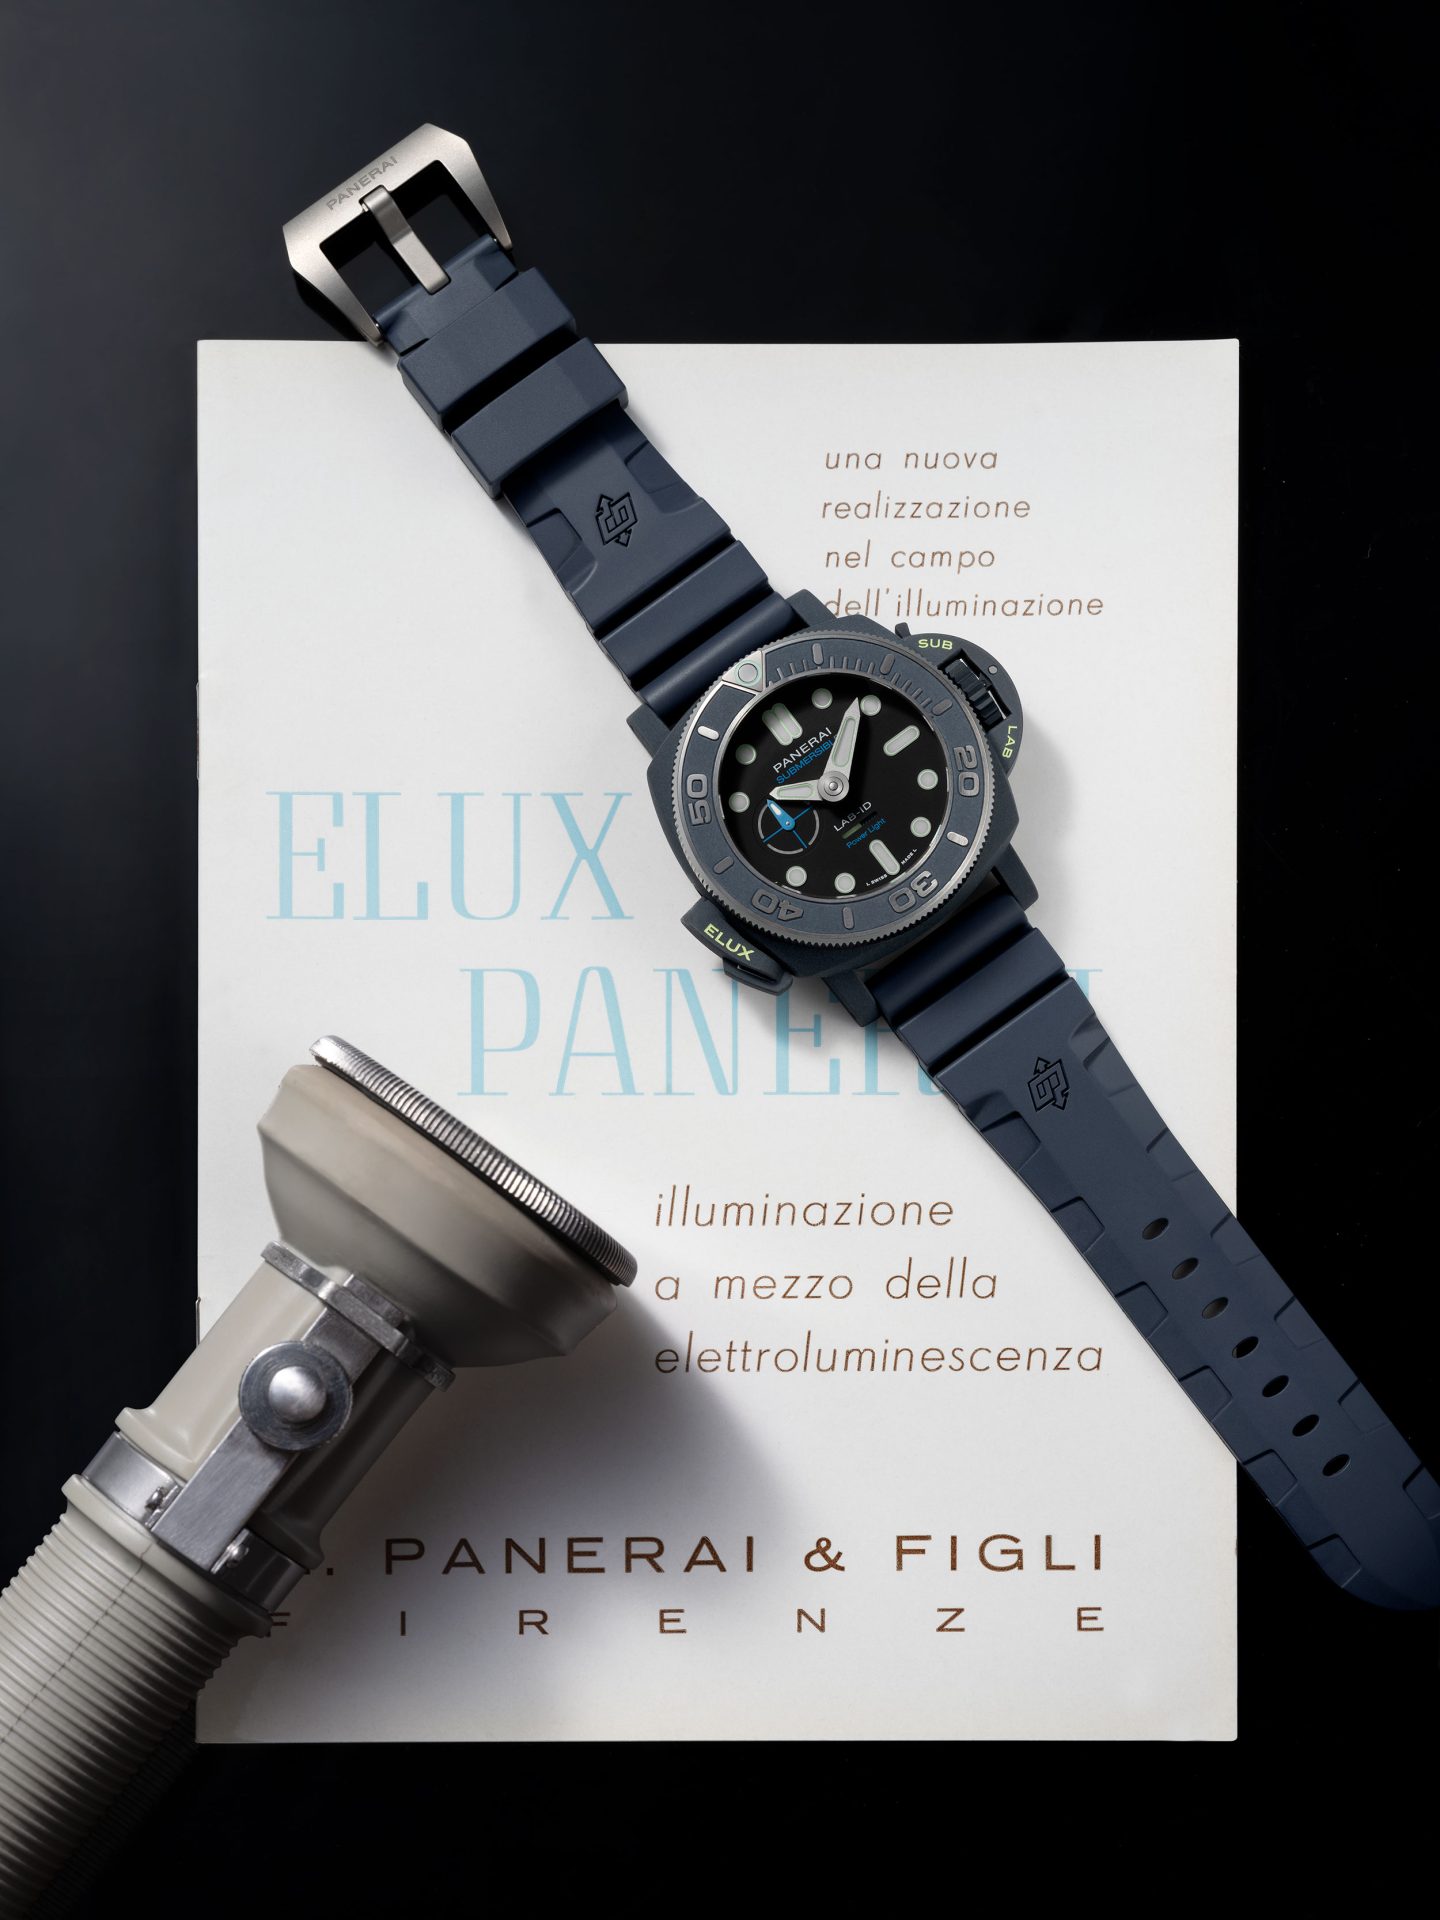 Reloj de Panerai con linterna Elux